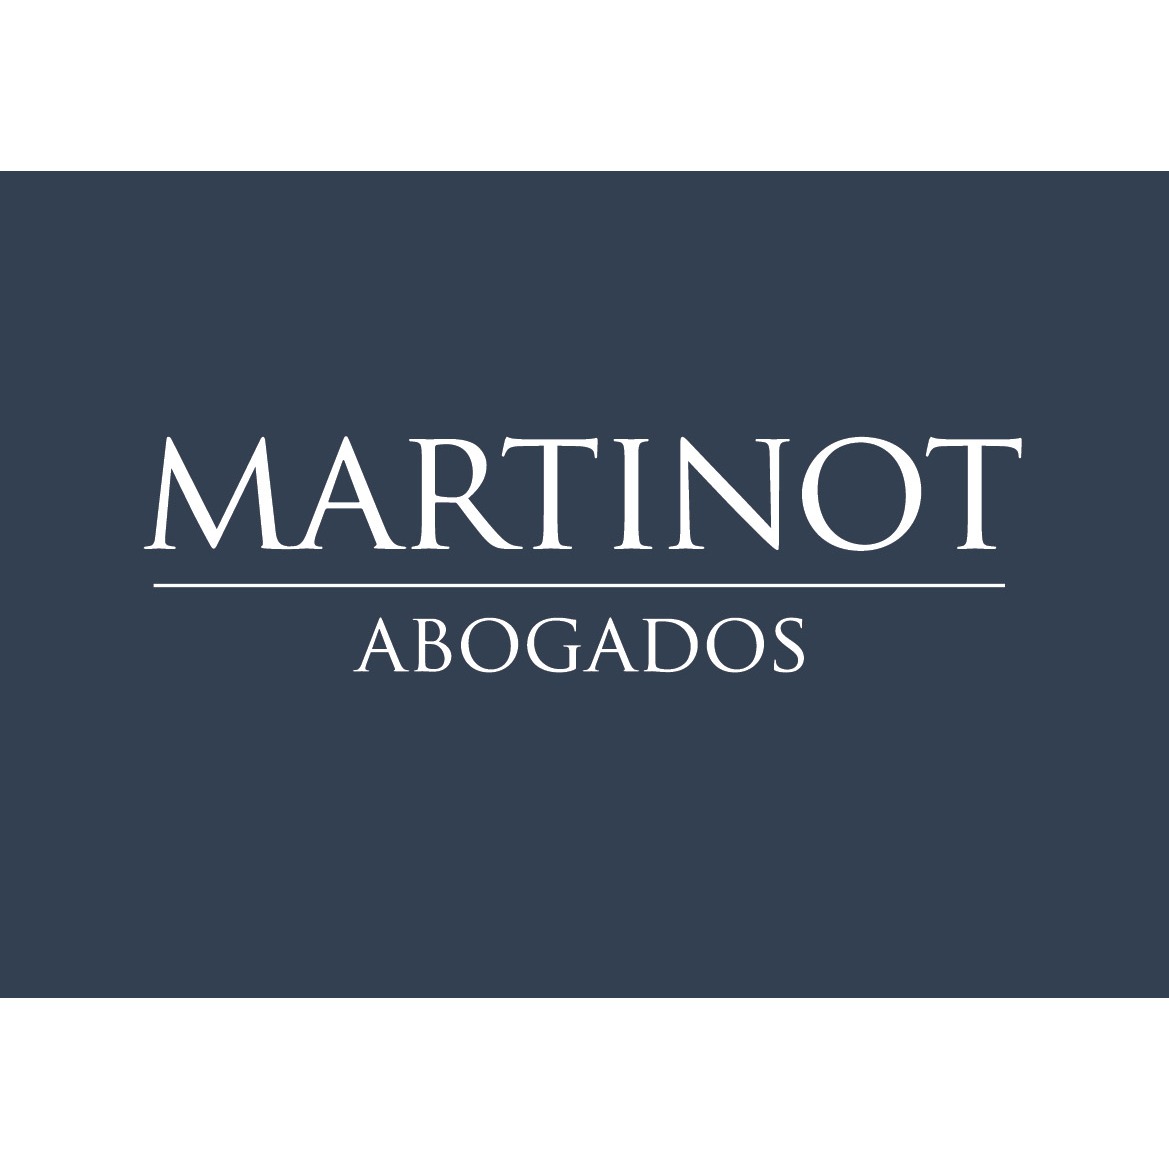 the Martinot Abogados logo.